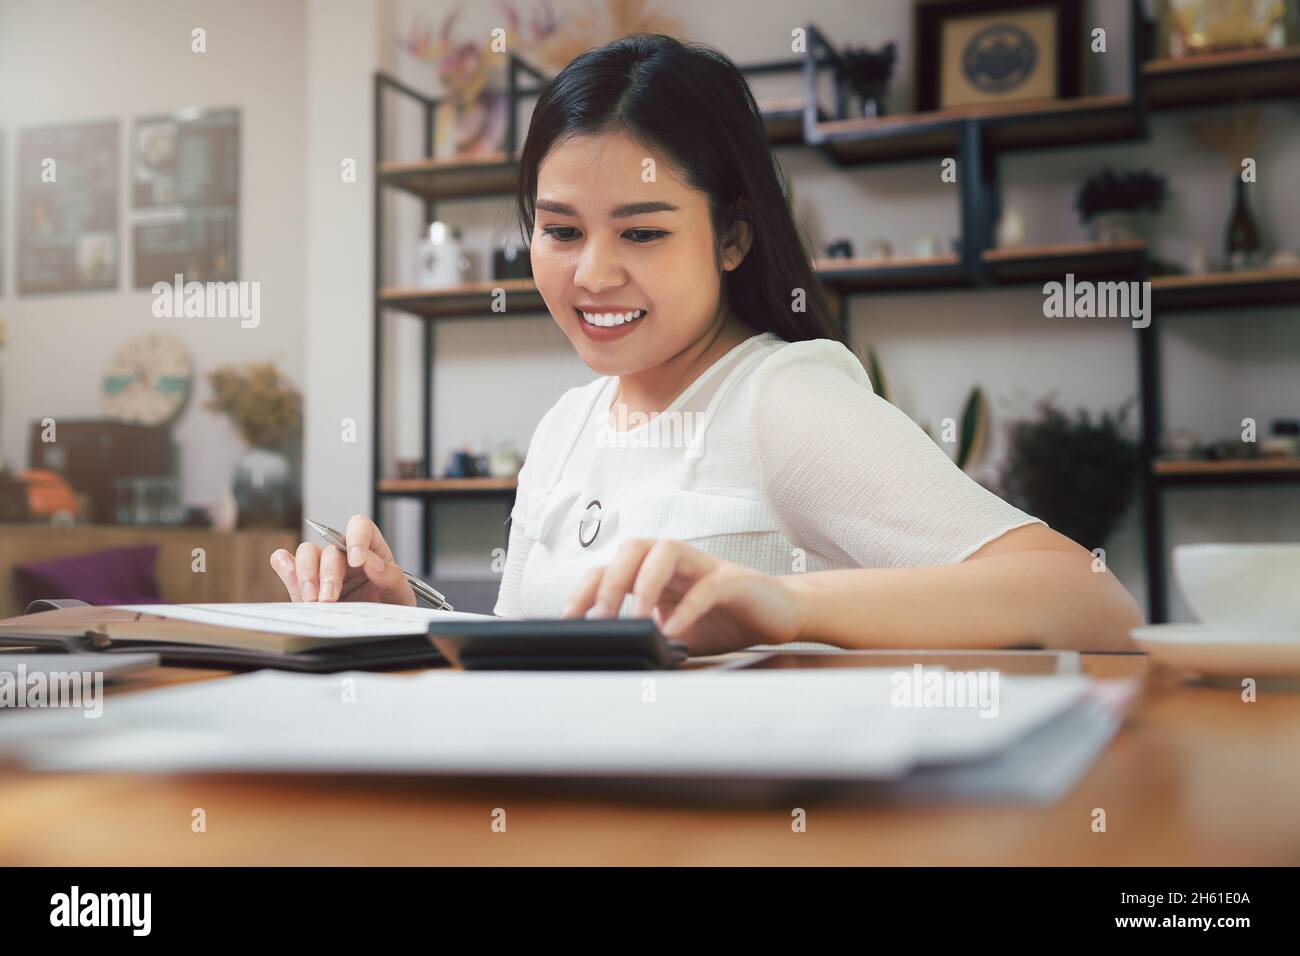 Junge asiatische Frau in smart casual tragen arbeiten im Home Office. Soziale Distanz Praxis verhindern Coronavirus COVID-19. Stockfoto